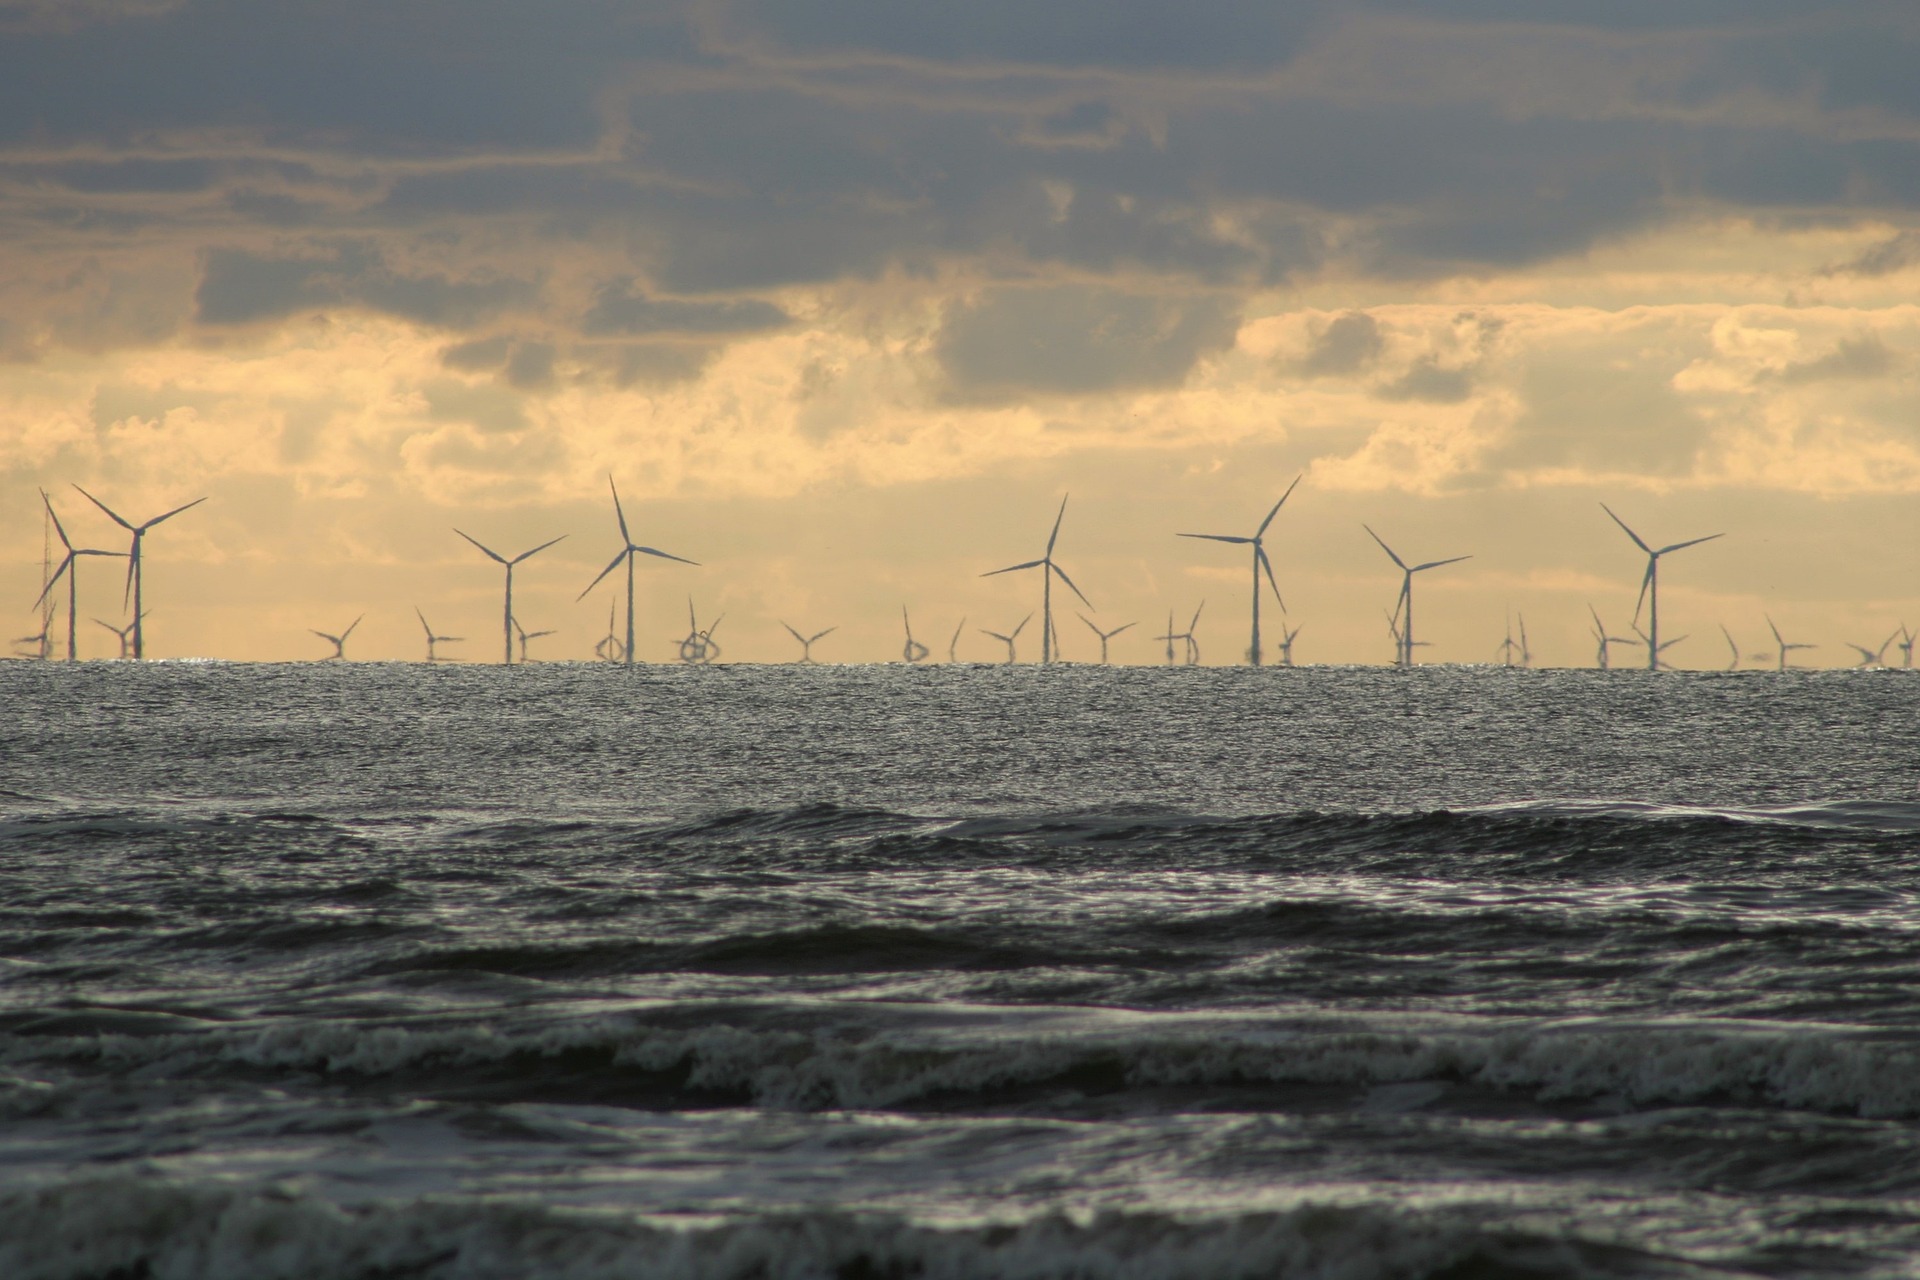 Eólica offshore deve alcançar 34 GW na América Latina impulsionada por hidrogênio. Na imagem: Ondas na praia, em primeiro plano, e, ao fundo, muitas turbinas eólicas em fazenda eólica offshore (Foto: David Will/Pixabay)